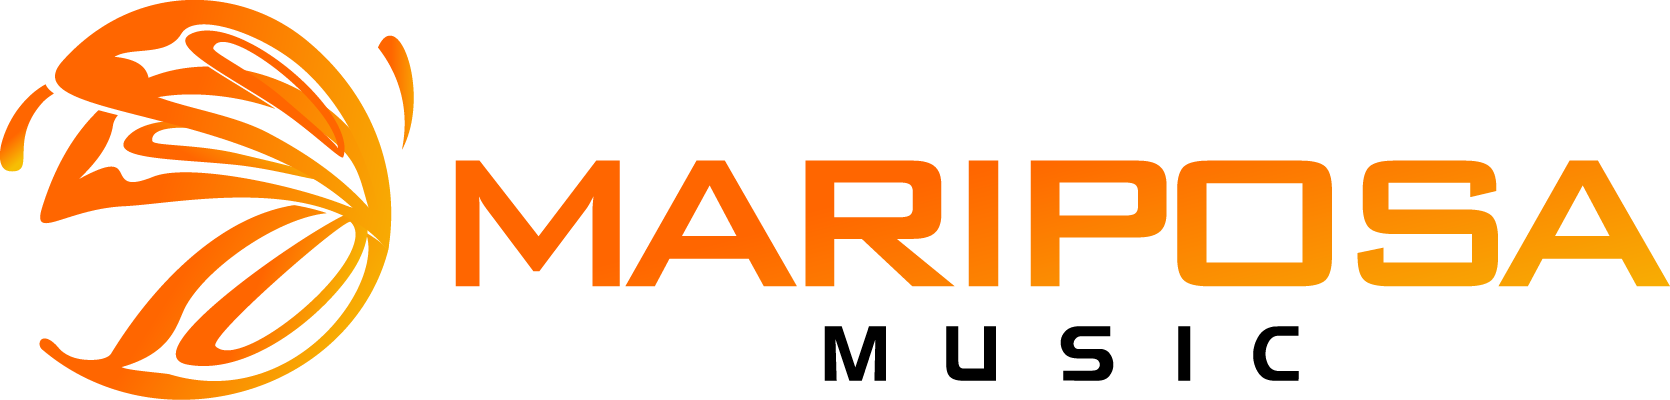 Mariposa Mobile Music Logo